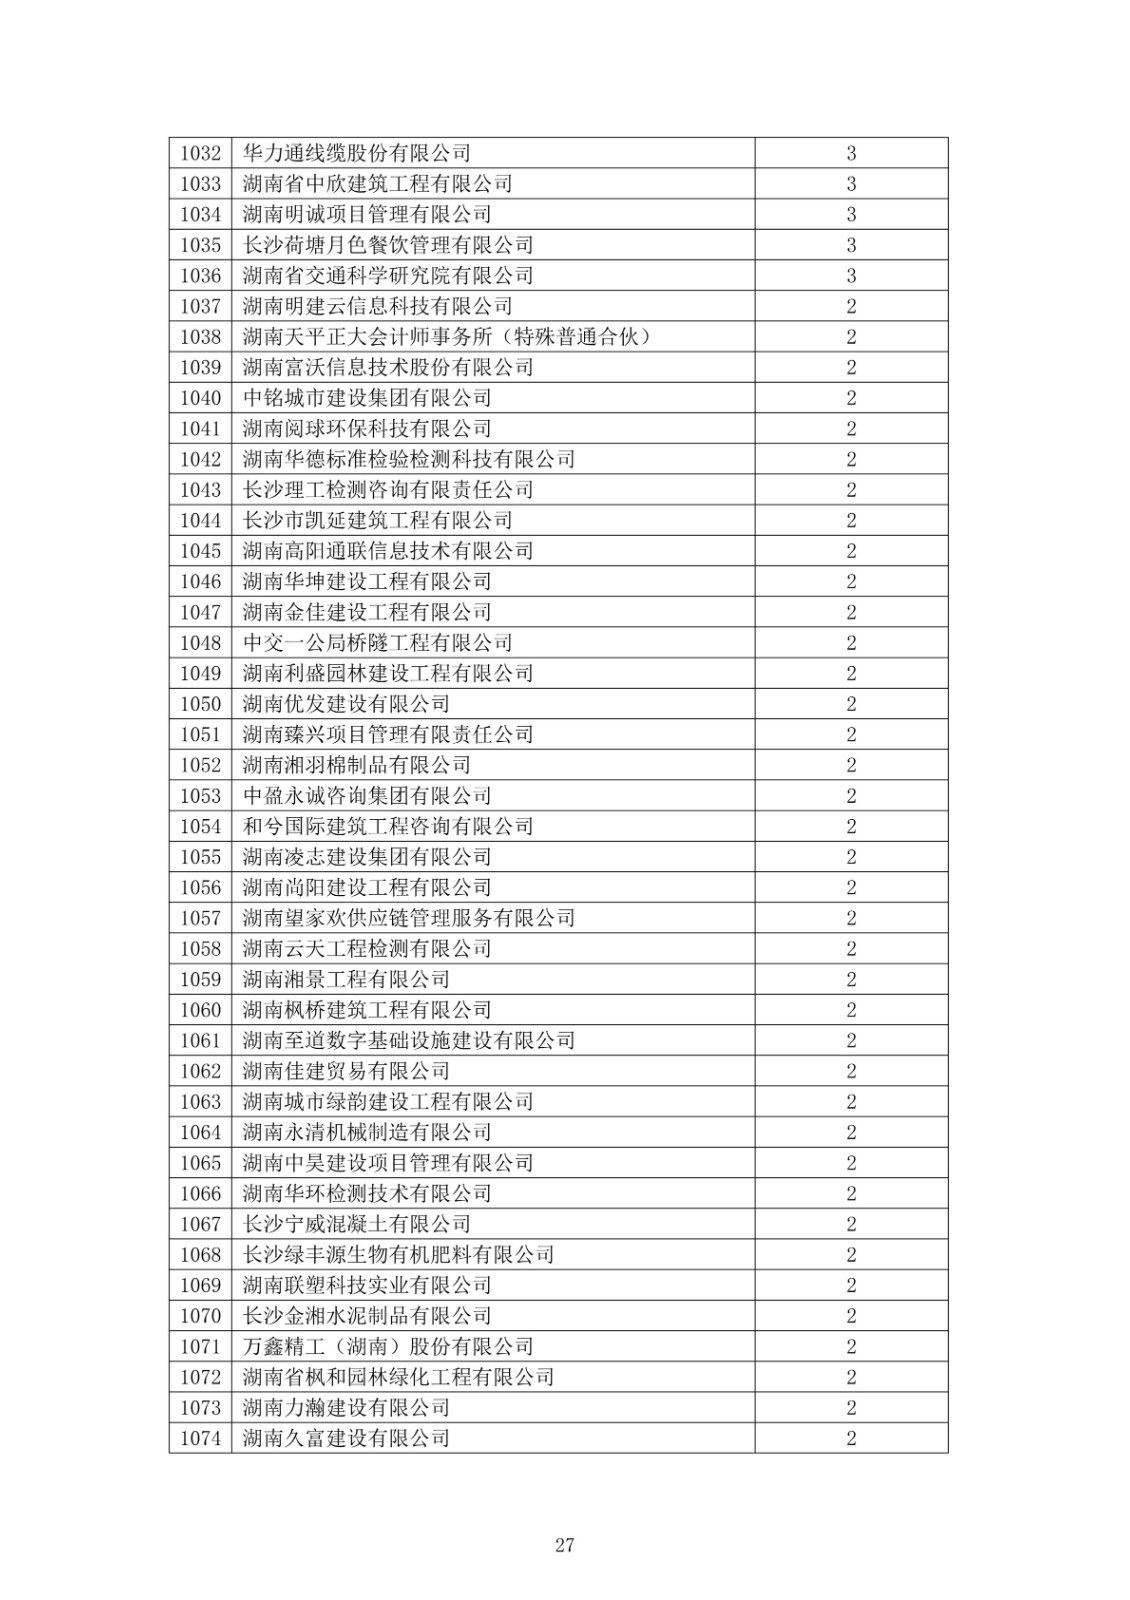 2021 年(nián)度湖南省守合同重信用企業公告_27.jpg